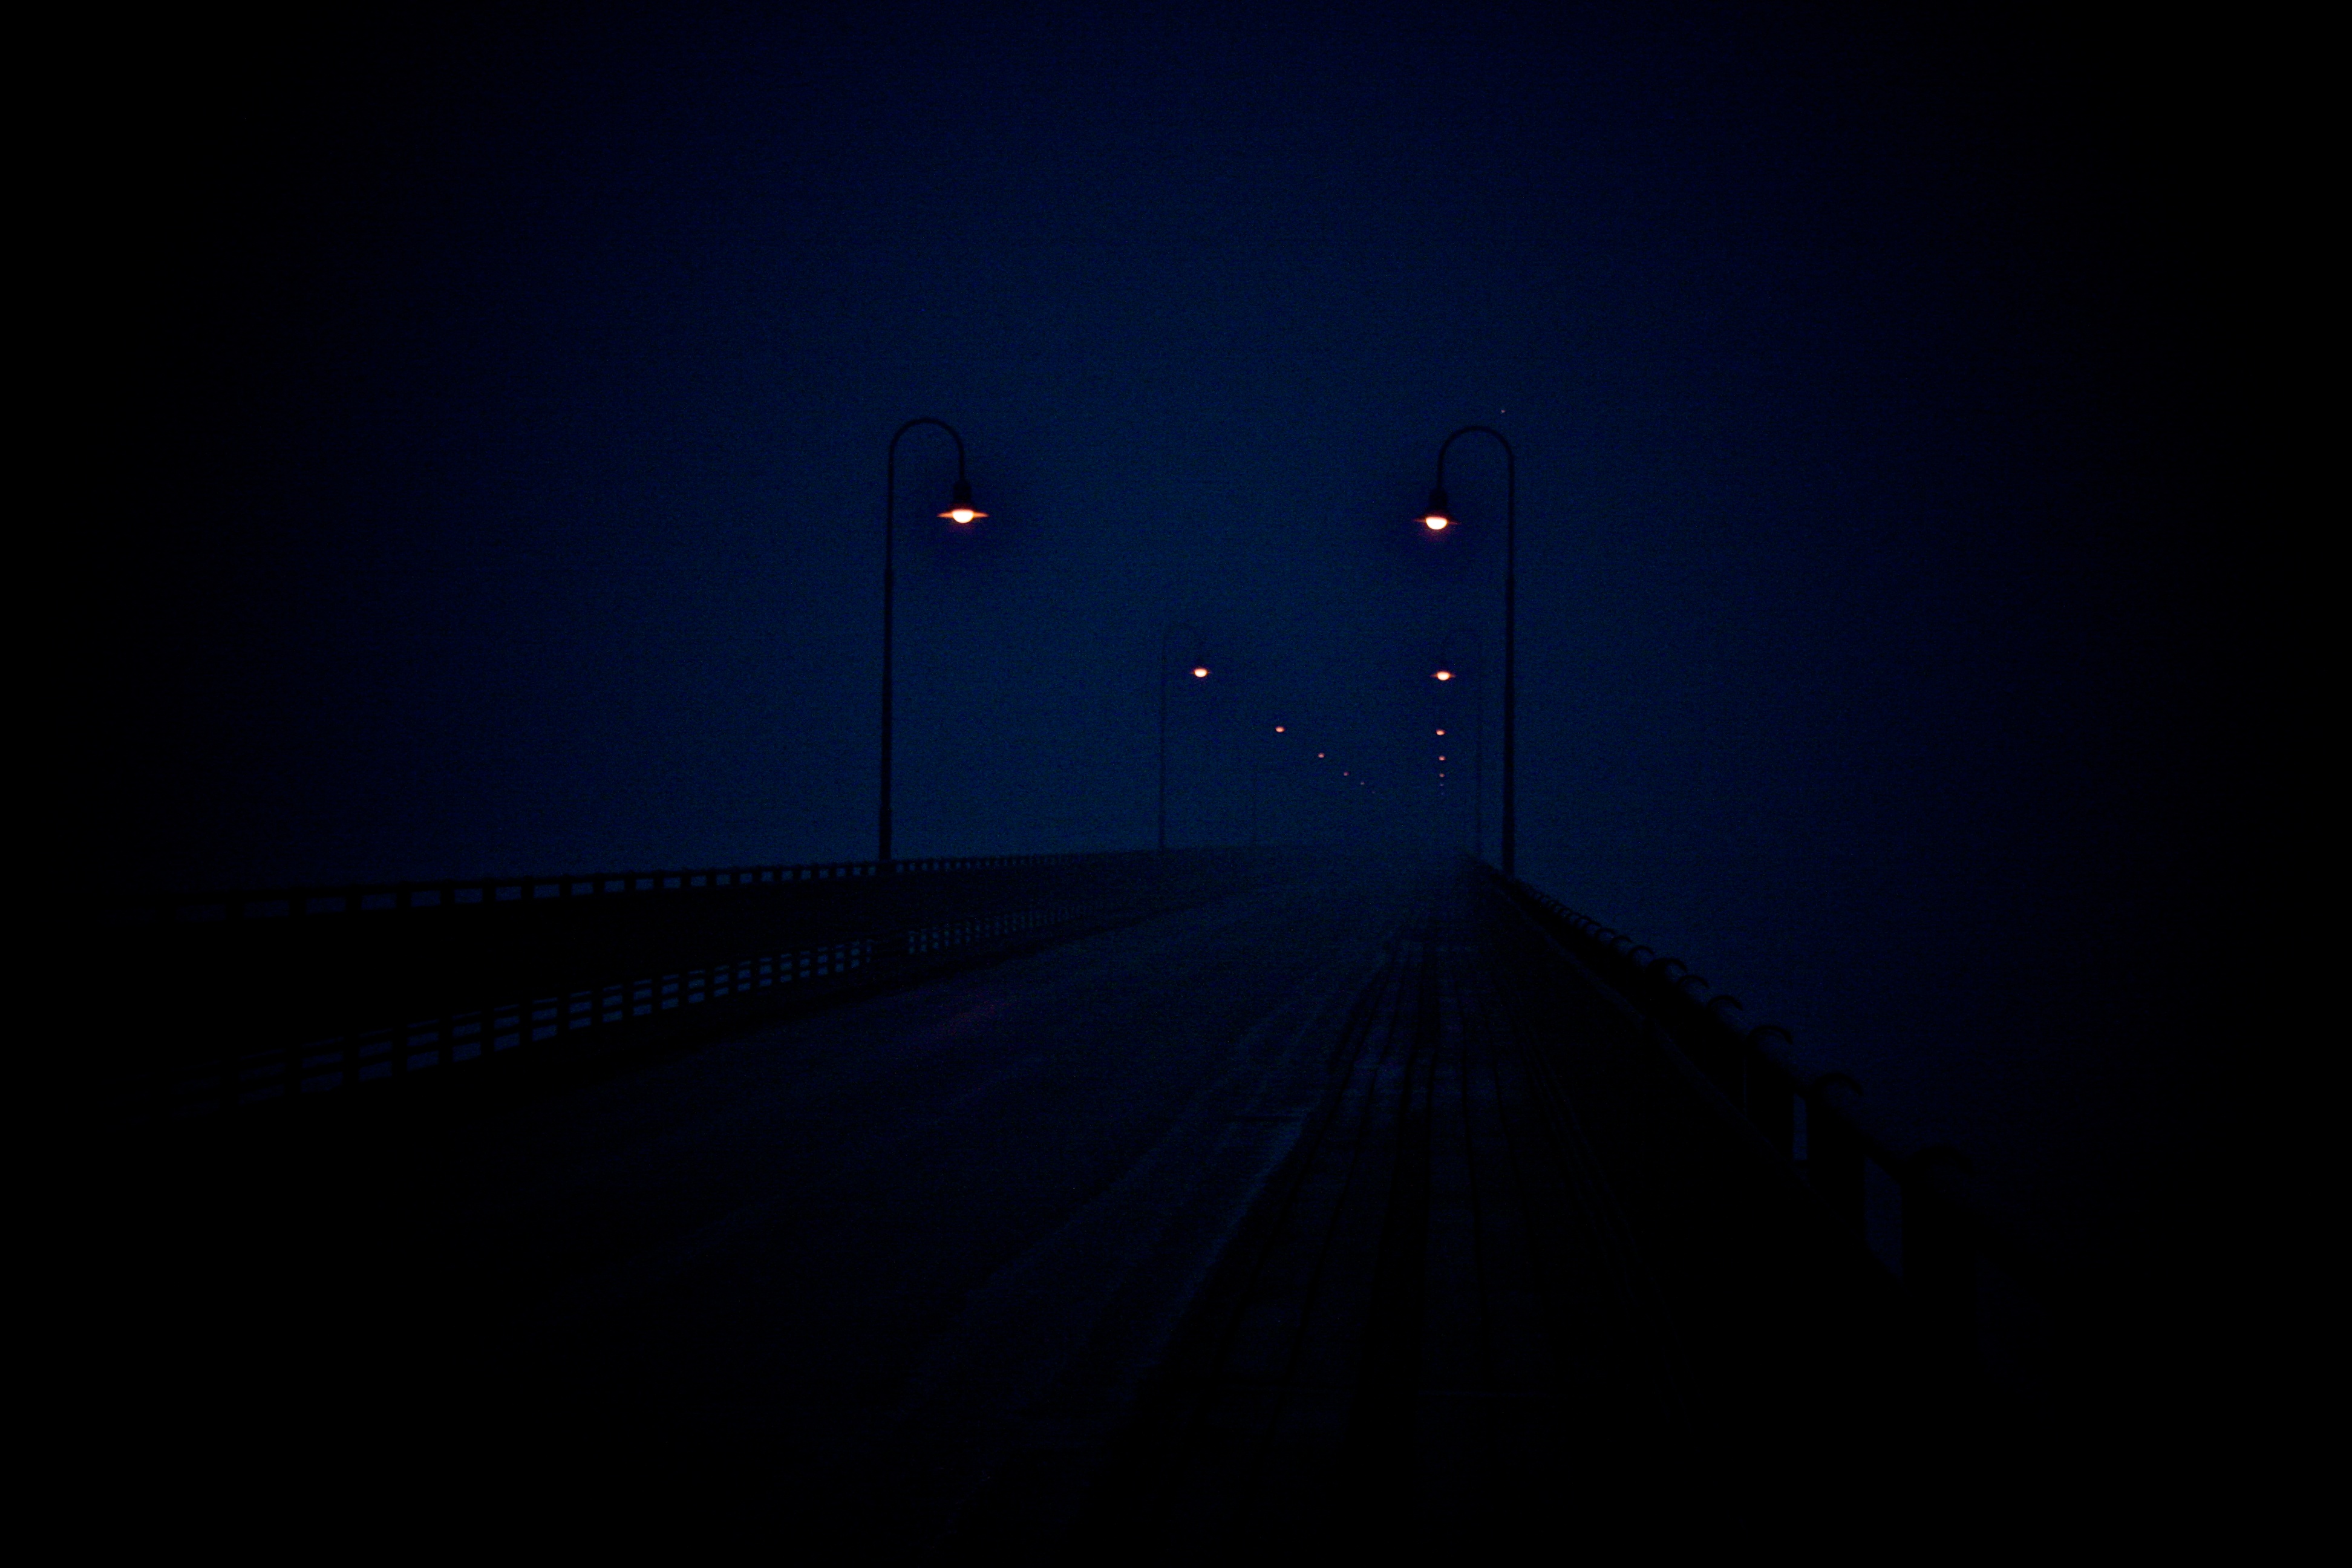 Moonlit bridge over a road at night